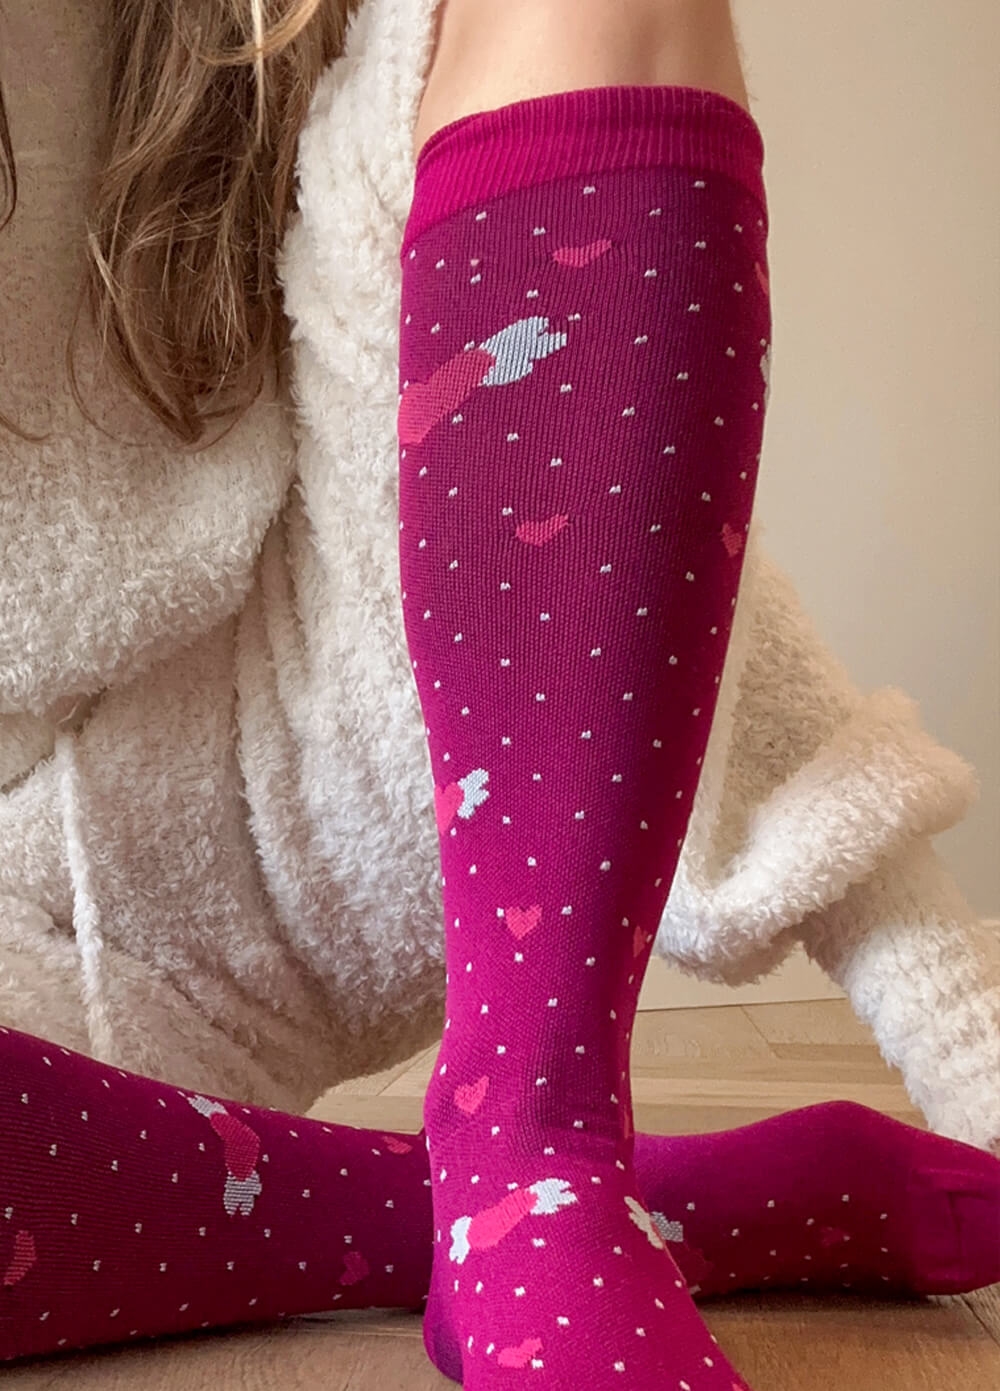 Mama Sox - Excite Maternity Compression Socks in Fuchsia Heart